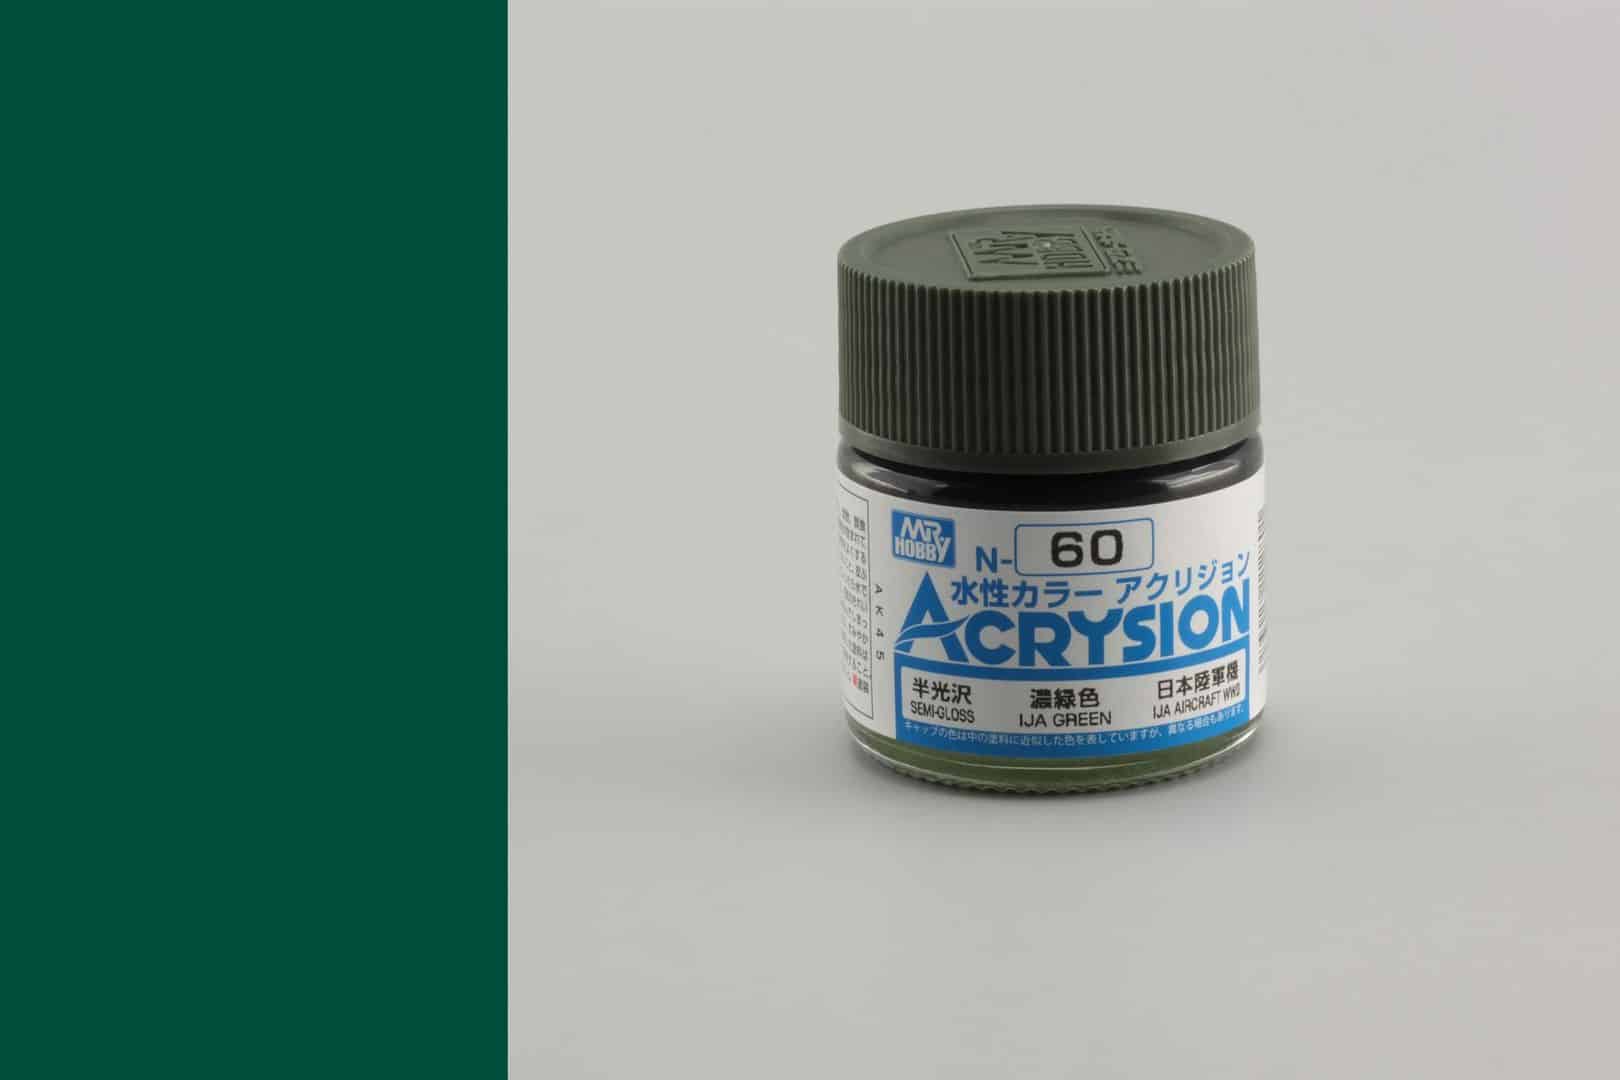 สีสูตรน้ำ Acrysion N60 IJA green